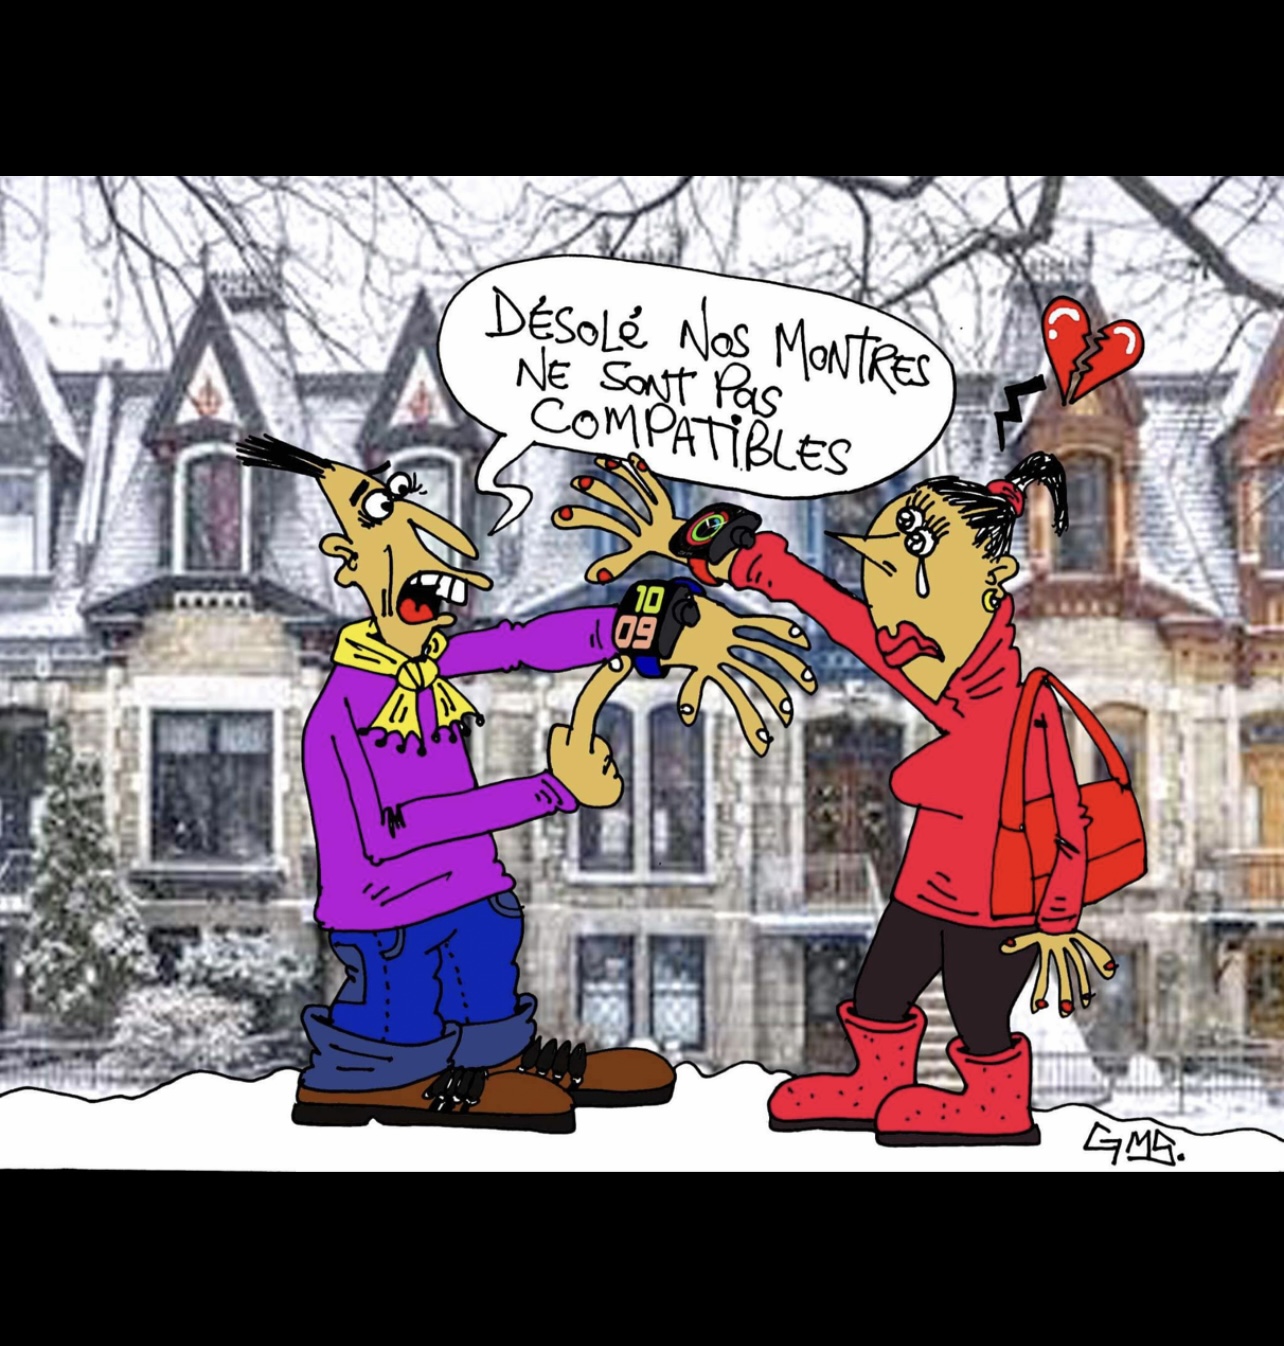 Caricature de deux personnes discutant devant un immeuble.